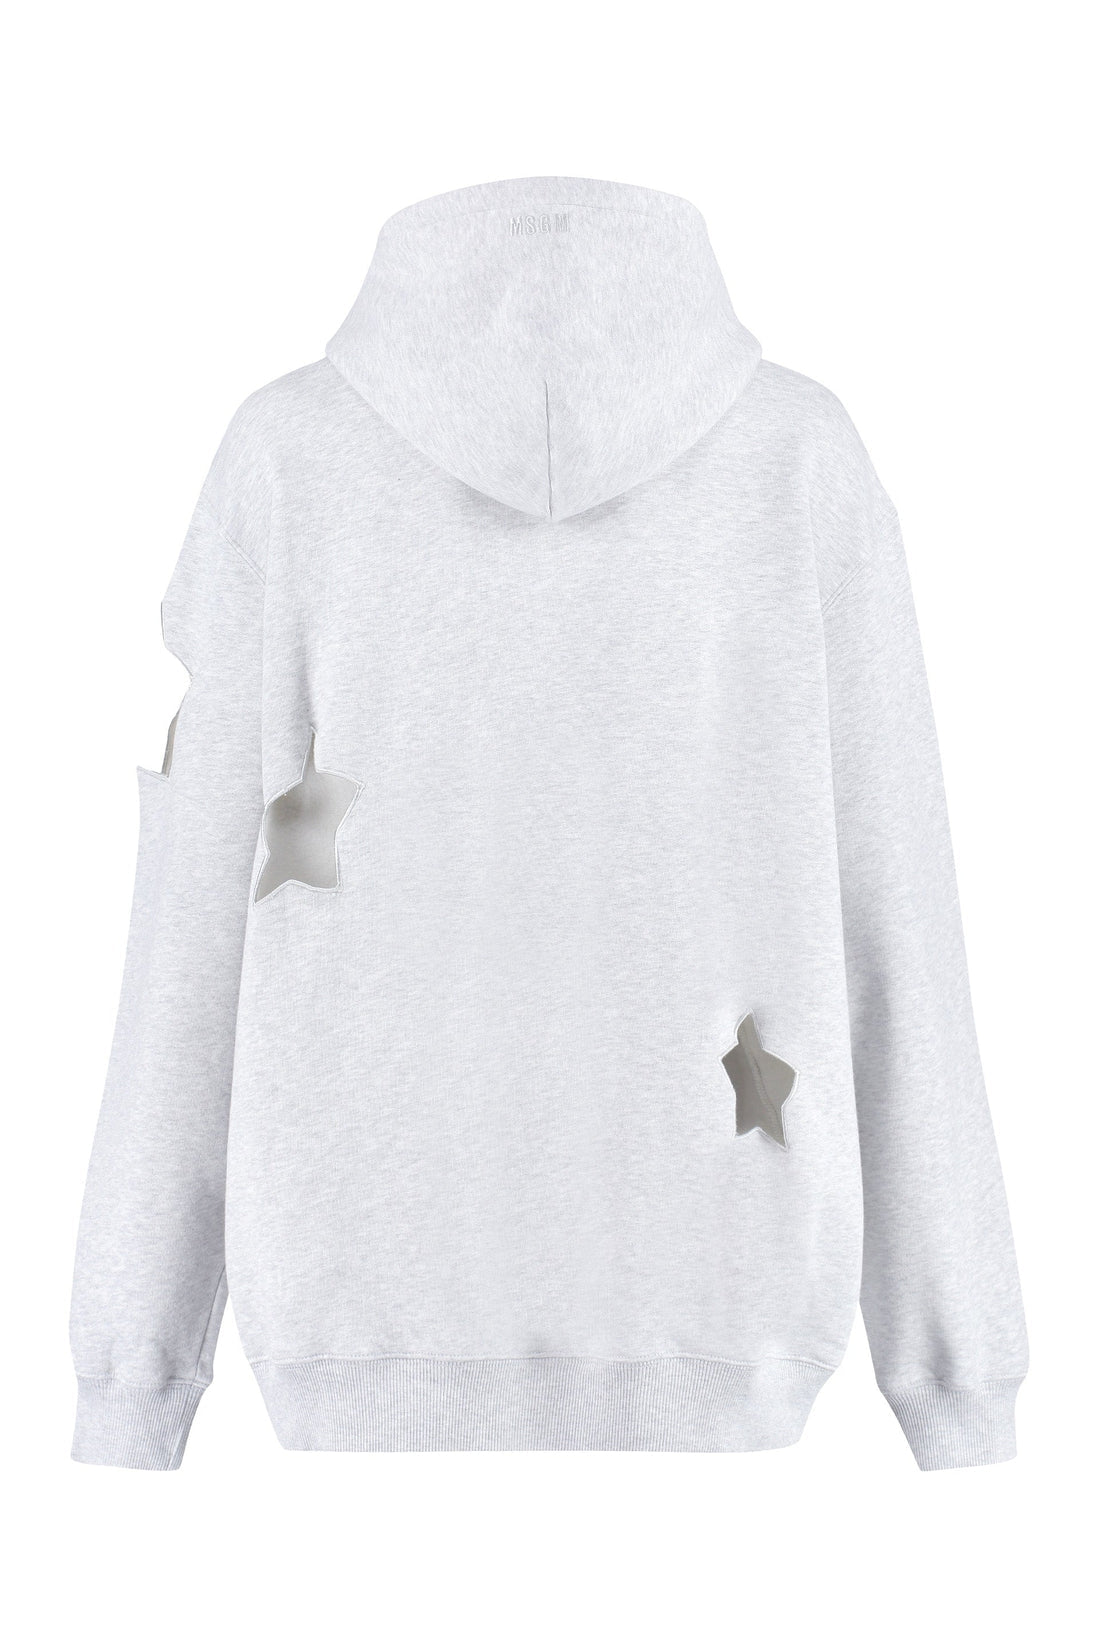 MSGM-OUTLET-SALE-Cotton hoodie-ARCHIVIST